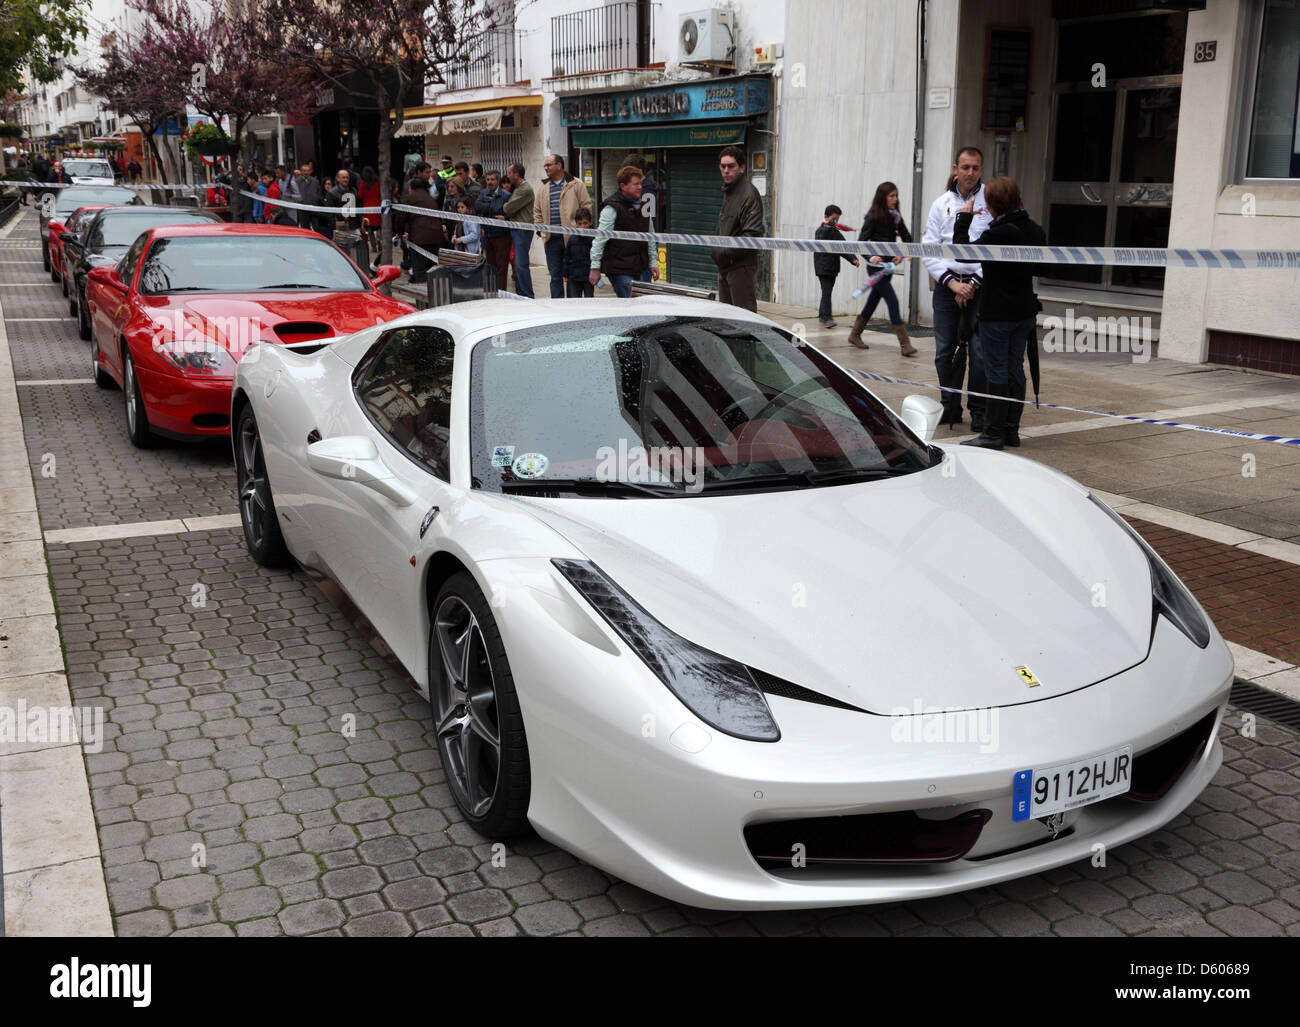 Les voitures de sport Ferrari dans les rues de Marbella, Andalousie Espagne Banque D'Images